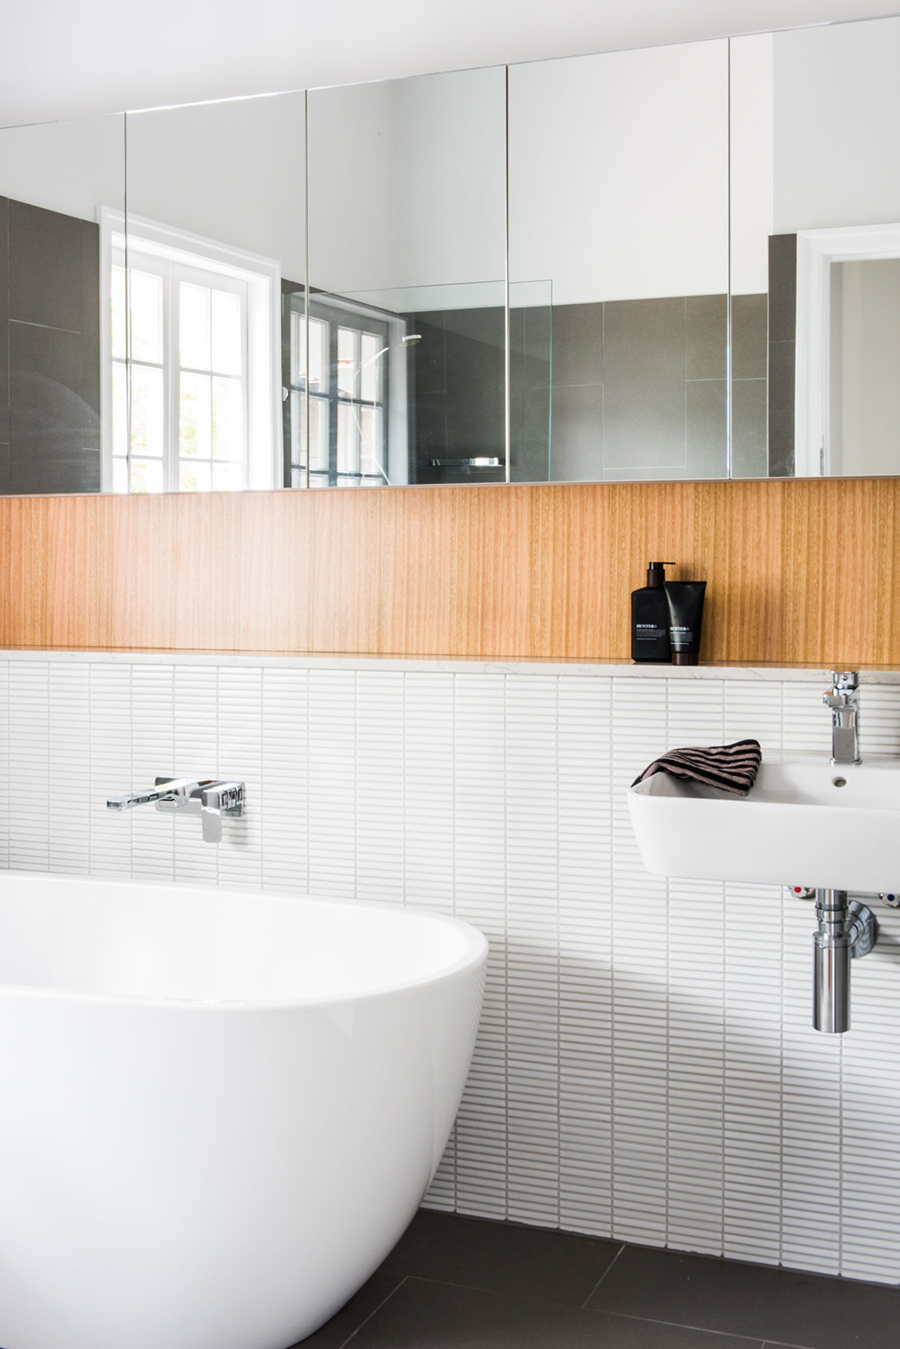 Queenslander home interior design CG Design Studio bath